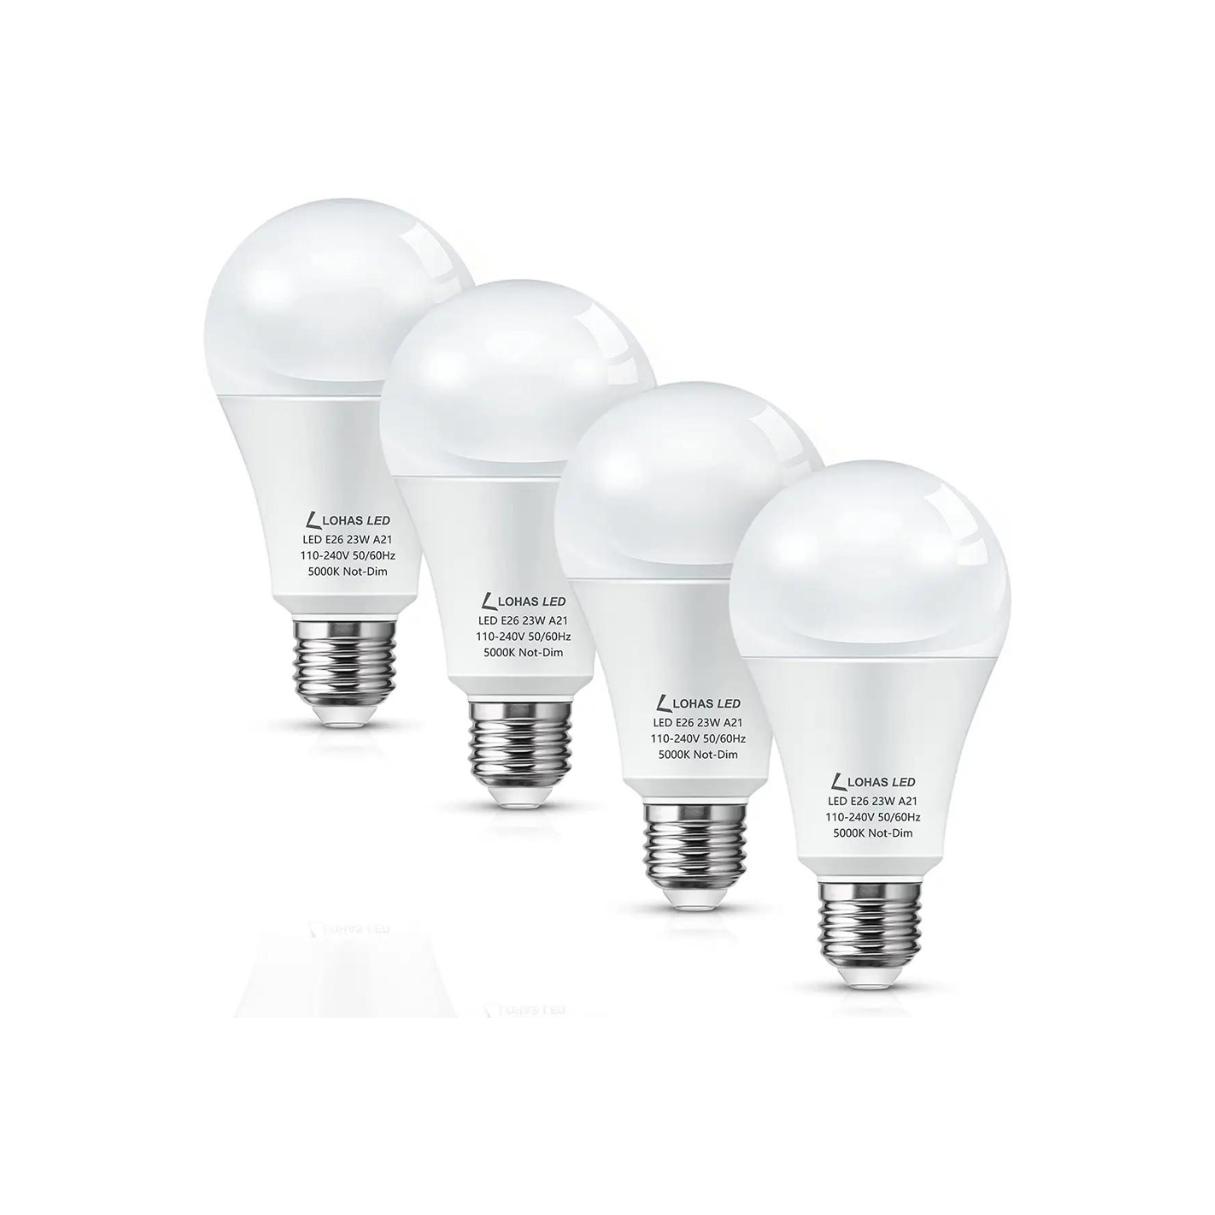 What Is An A21 Light Bulb